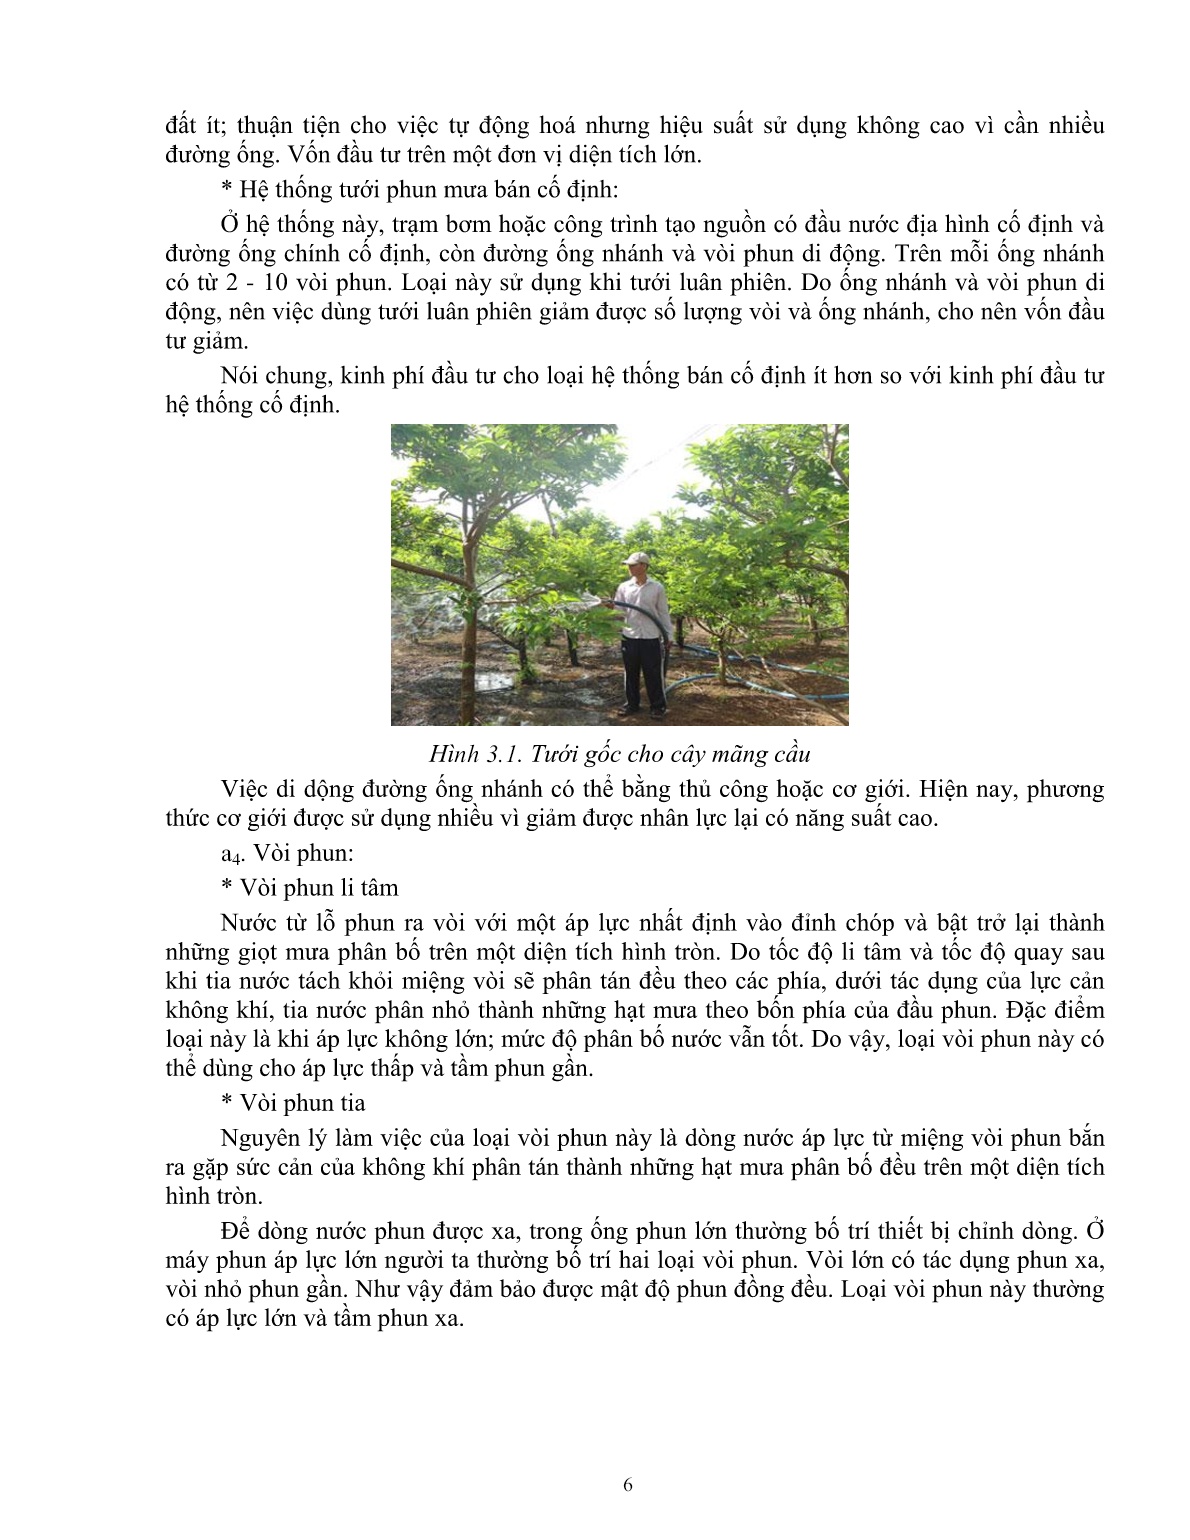 Giáo trình mô đun Chăm sóc cây mãng cầu ta (Trình độ: Đào tạo dưới 03 tháng) trang 7